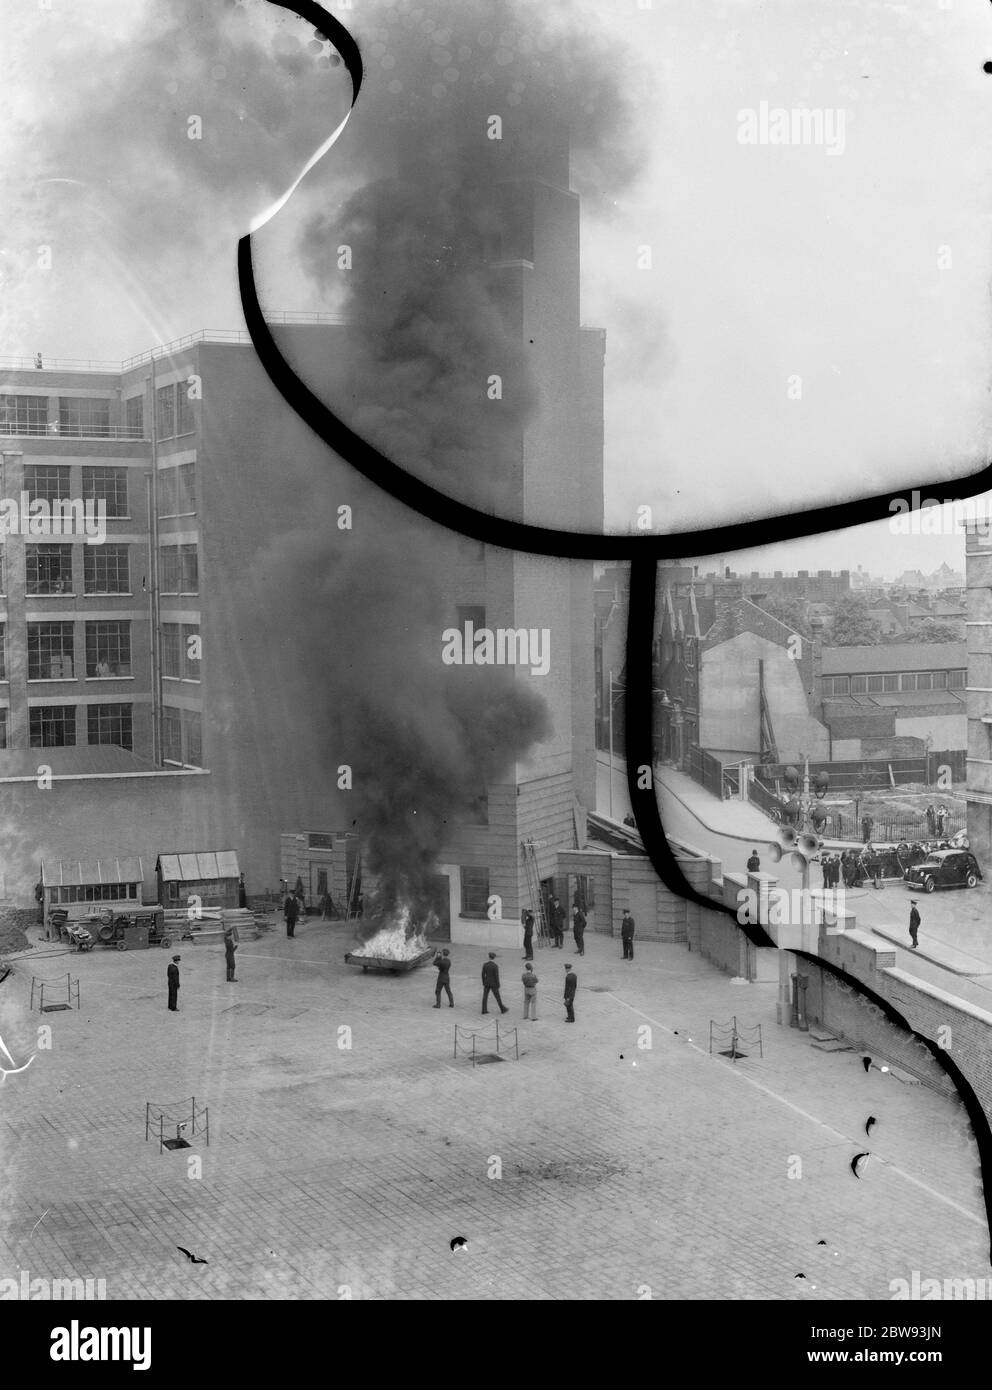 Un exposition de la brigade de pompiers de Londres à Lambeth , Londres . L'équipe d'incendie réagit à un incendie à la base d'un bâtiment de grande hauteur pendant la démonstration . 1939 Banque D'Images